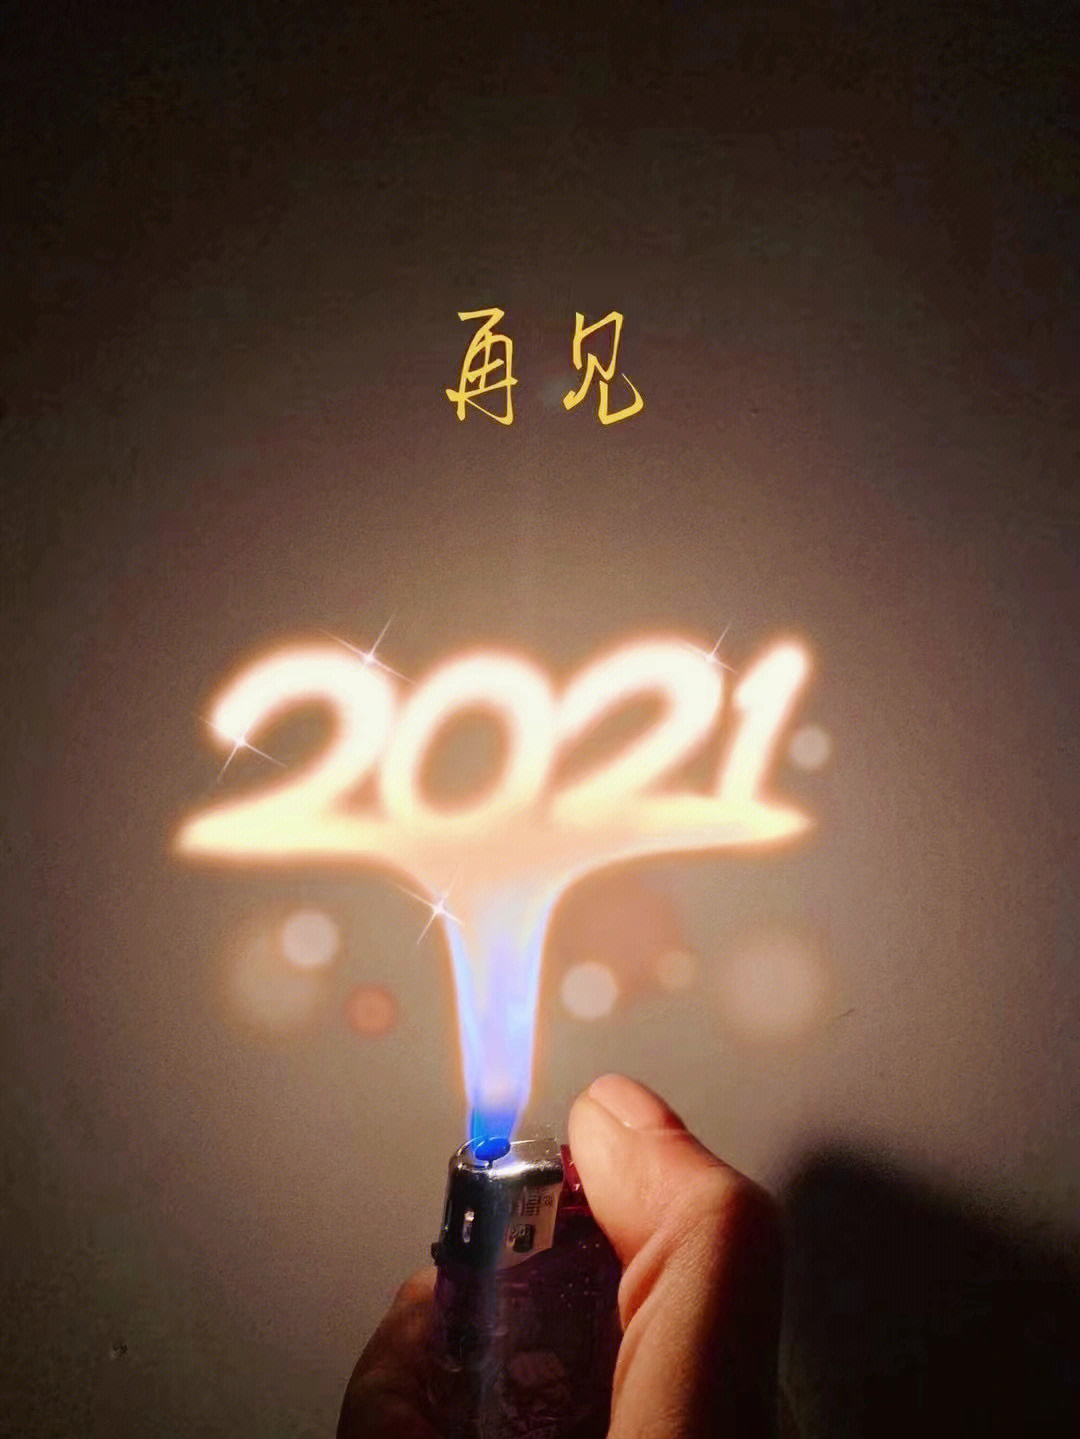 再见2021你好2022星辰大海明年再见